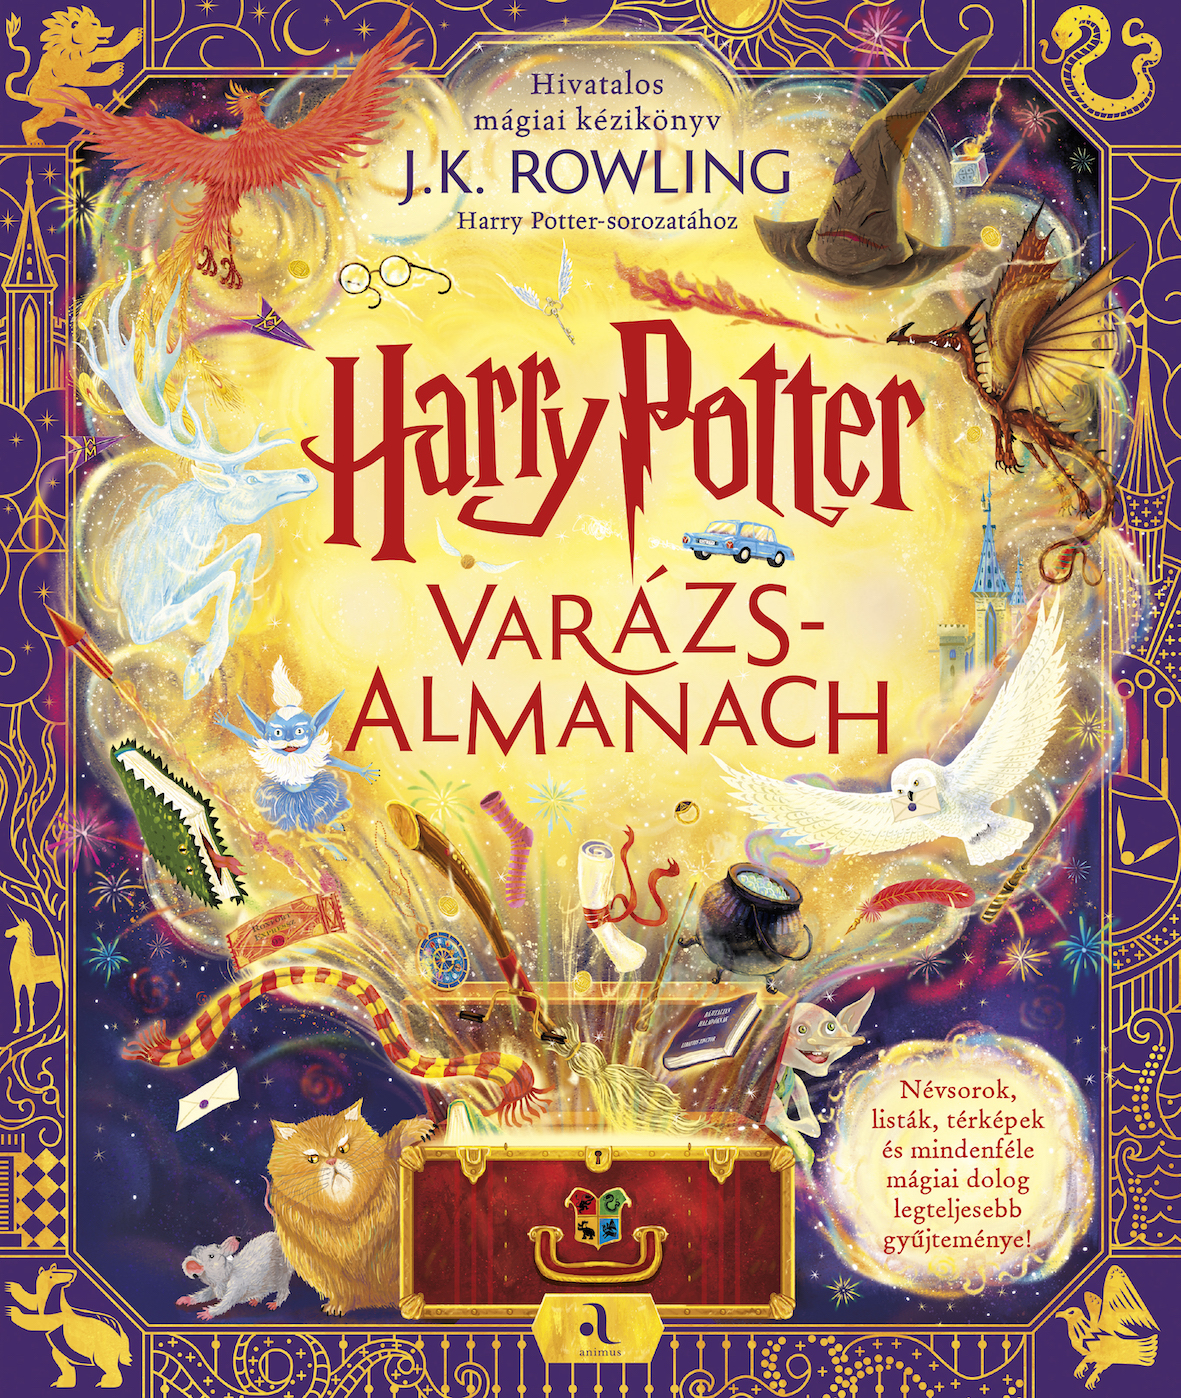 Varázslatos könyvbemutatóval érkezik az új Harry Potter-könyv